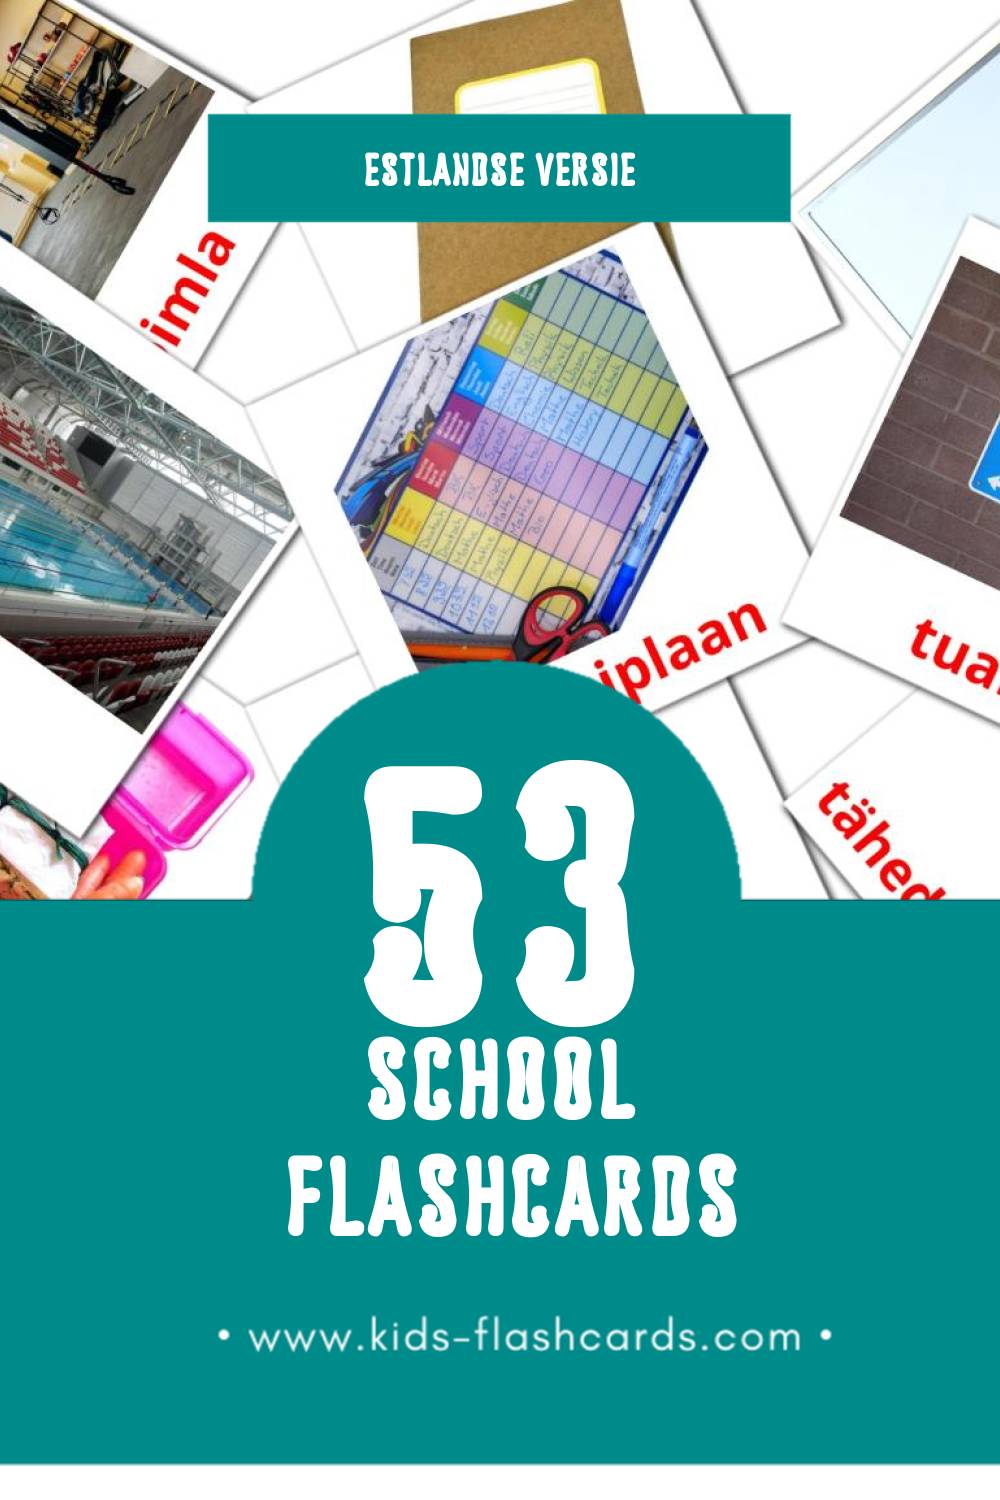 Visuele Kool Flashcards voor Kleuters (53 kaarten in het Estlands)